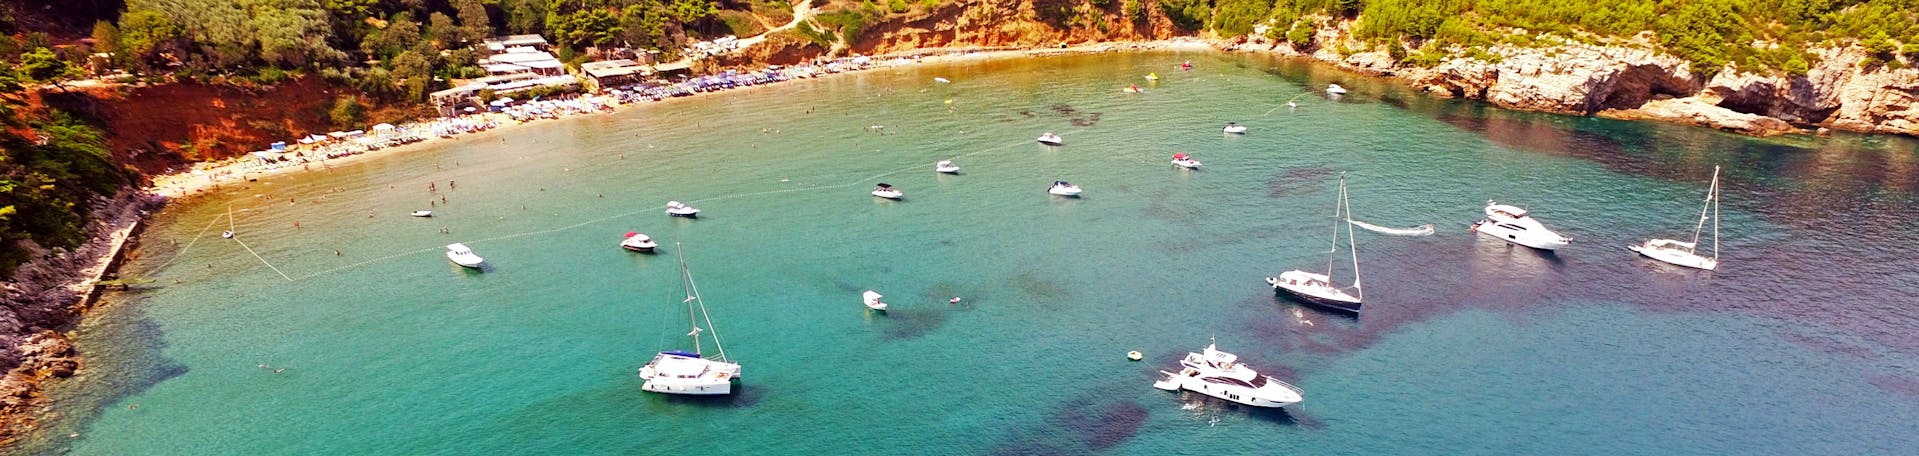 Blick auf die Bucht während der privaten ganztägigen Bootstour von Dubrovnik zu den Elaphiti-Inseln, die von Snooky Tours Dubrovnik veranstaltet wird.